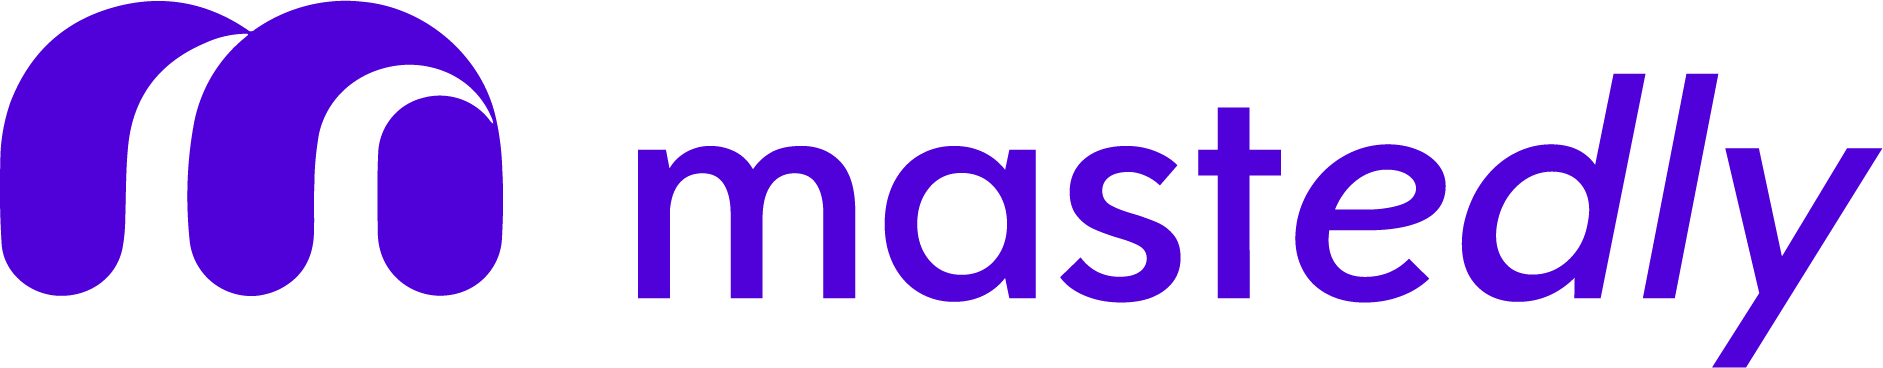 Mastedly Logo